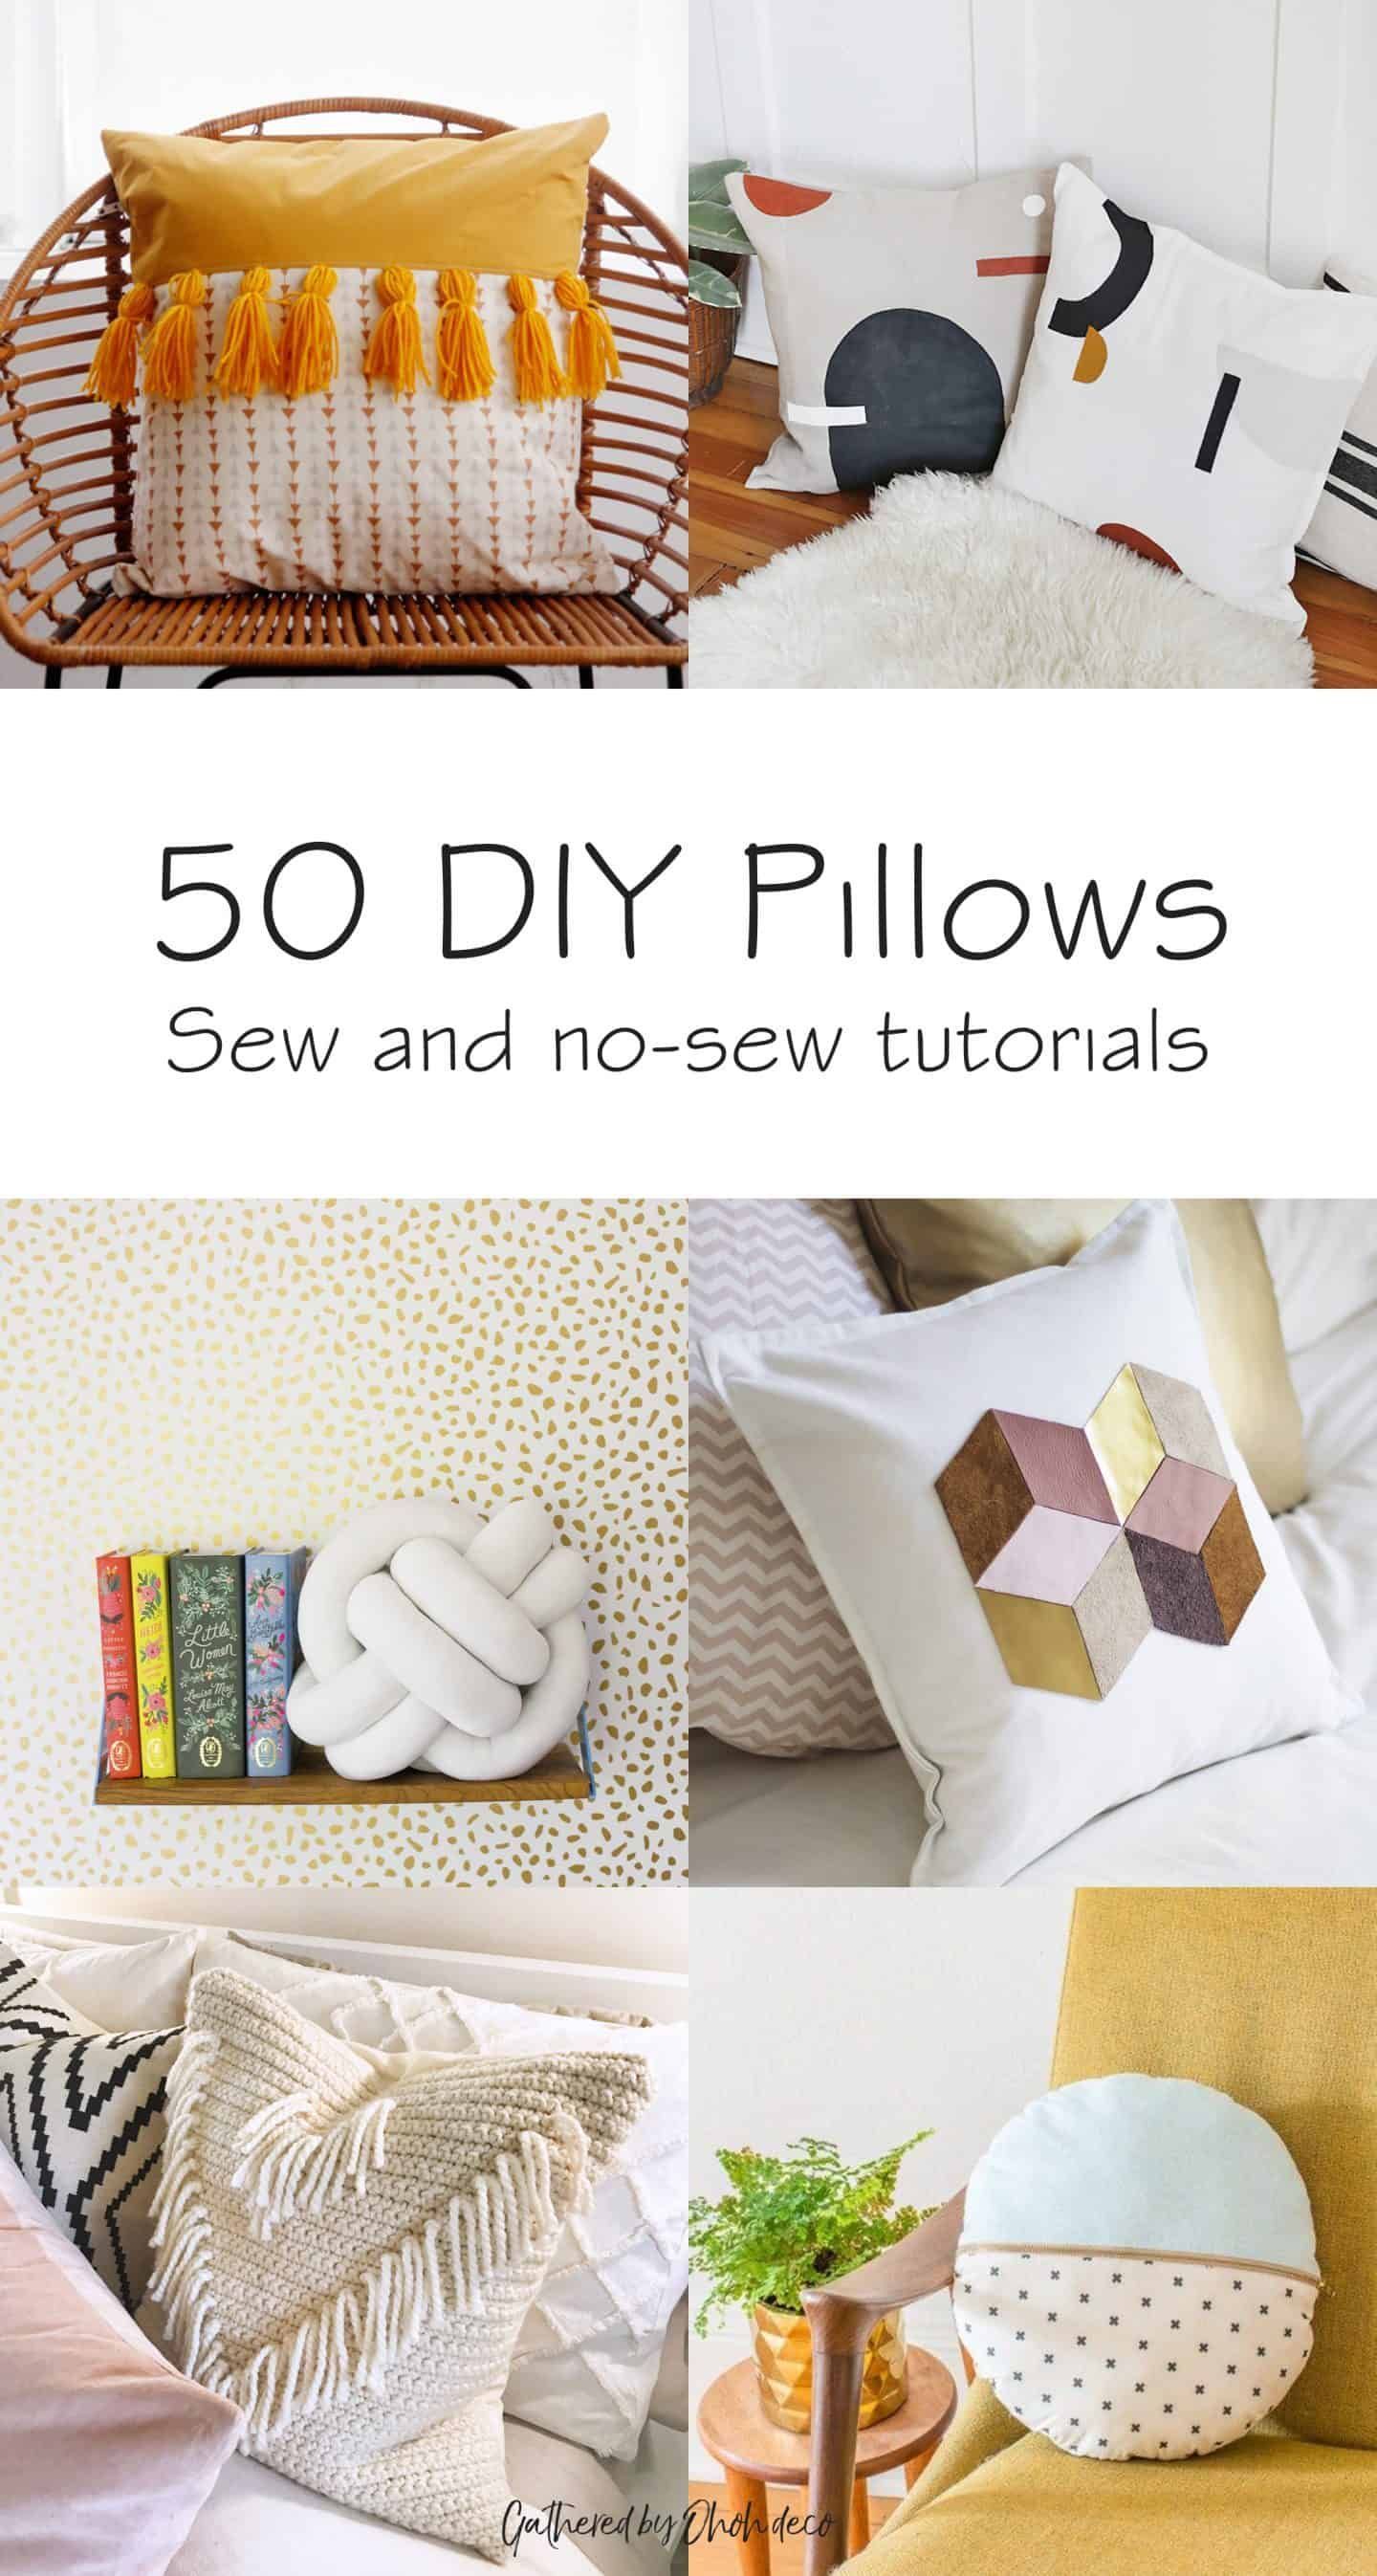 Polyester/Cotton/Corduroy/Plush - Polyester/Cotton/Corduroy/Plush -   19 diy Pillows big ideas